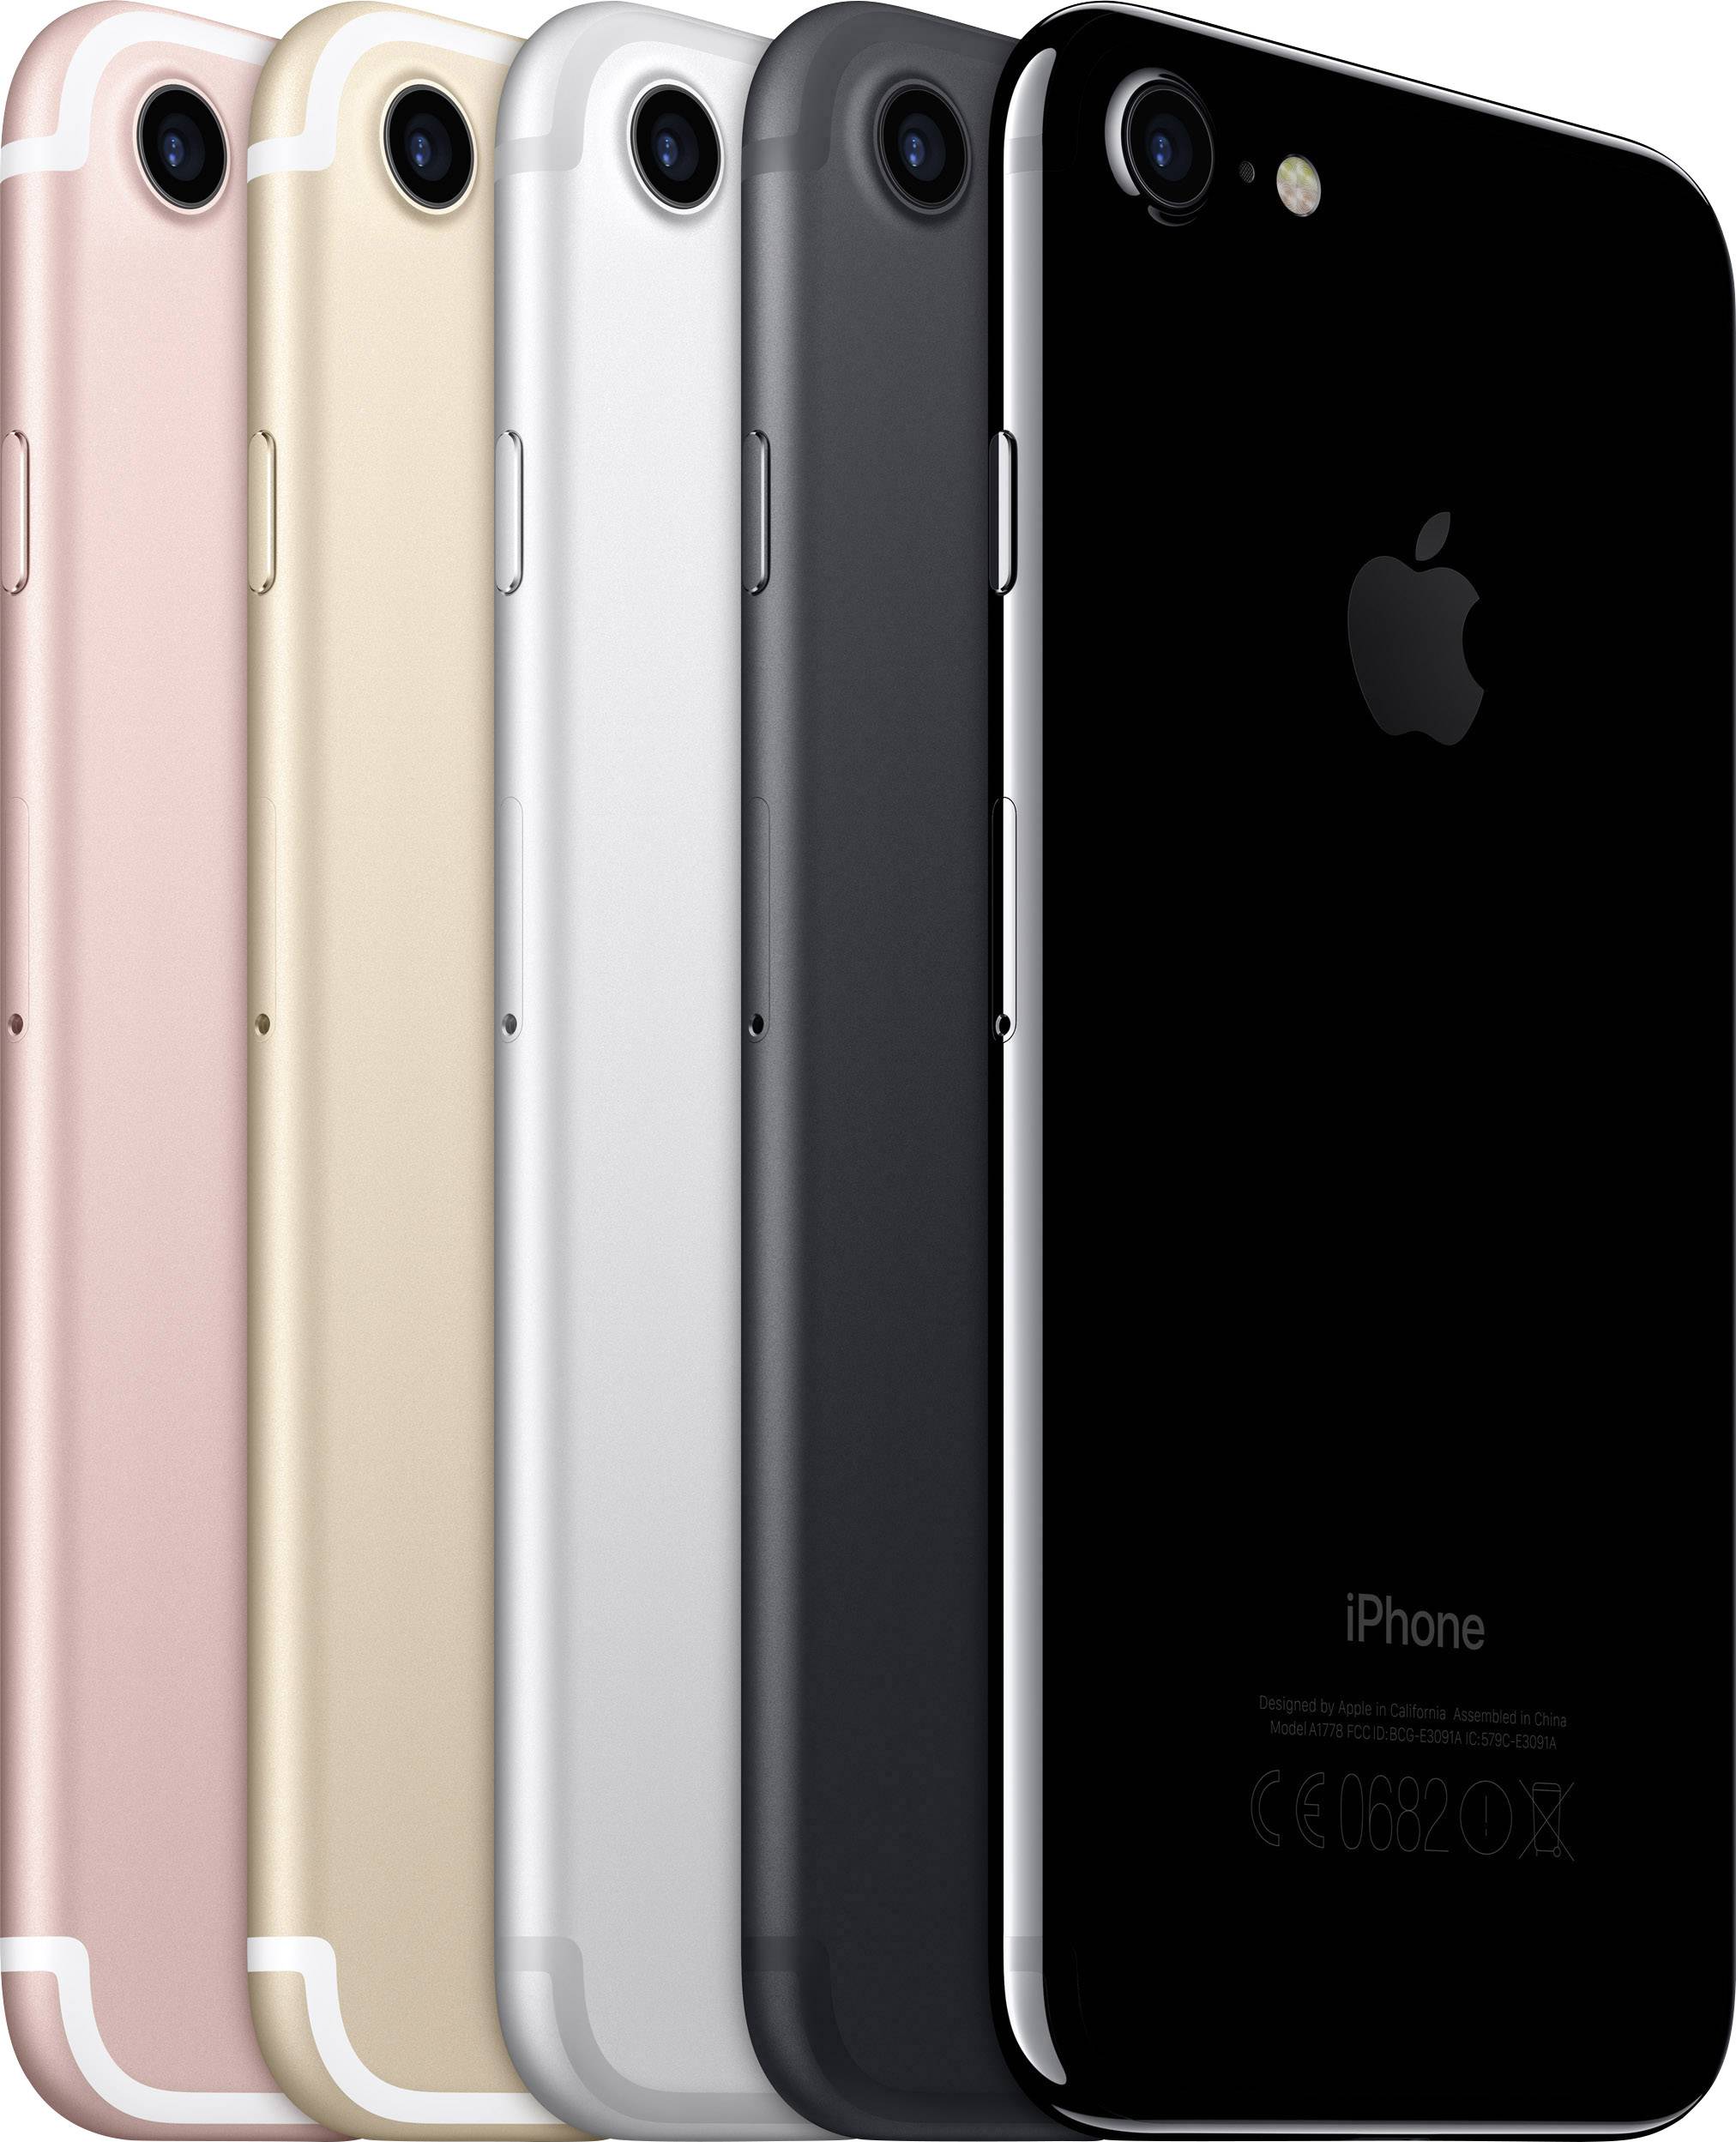 Apple iPhone 7 iPhone 32 GB  cm ( inch) Black iOS 10 